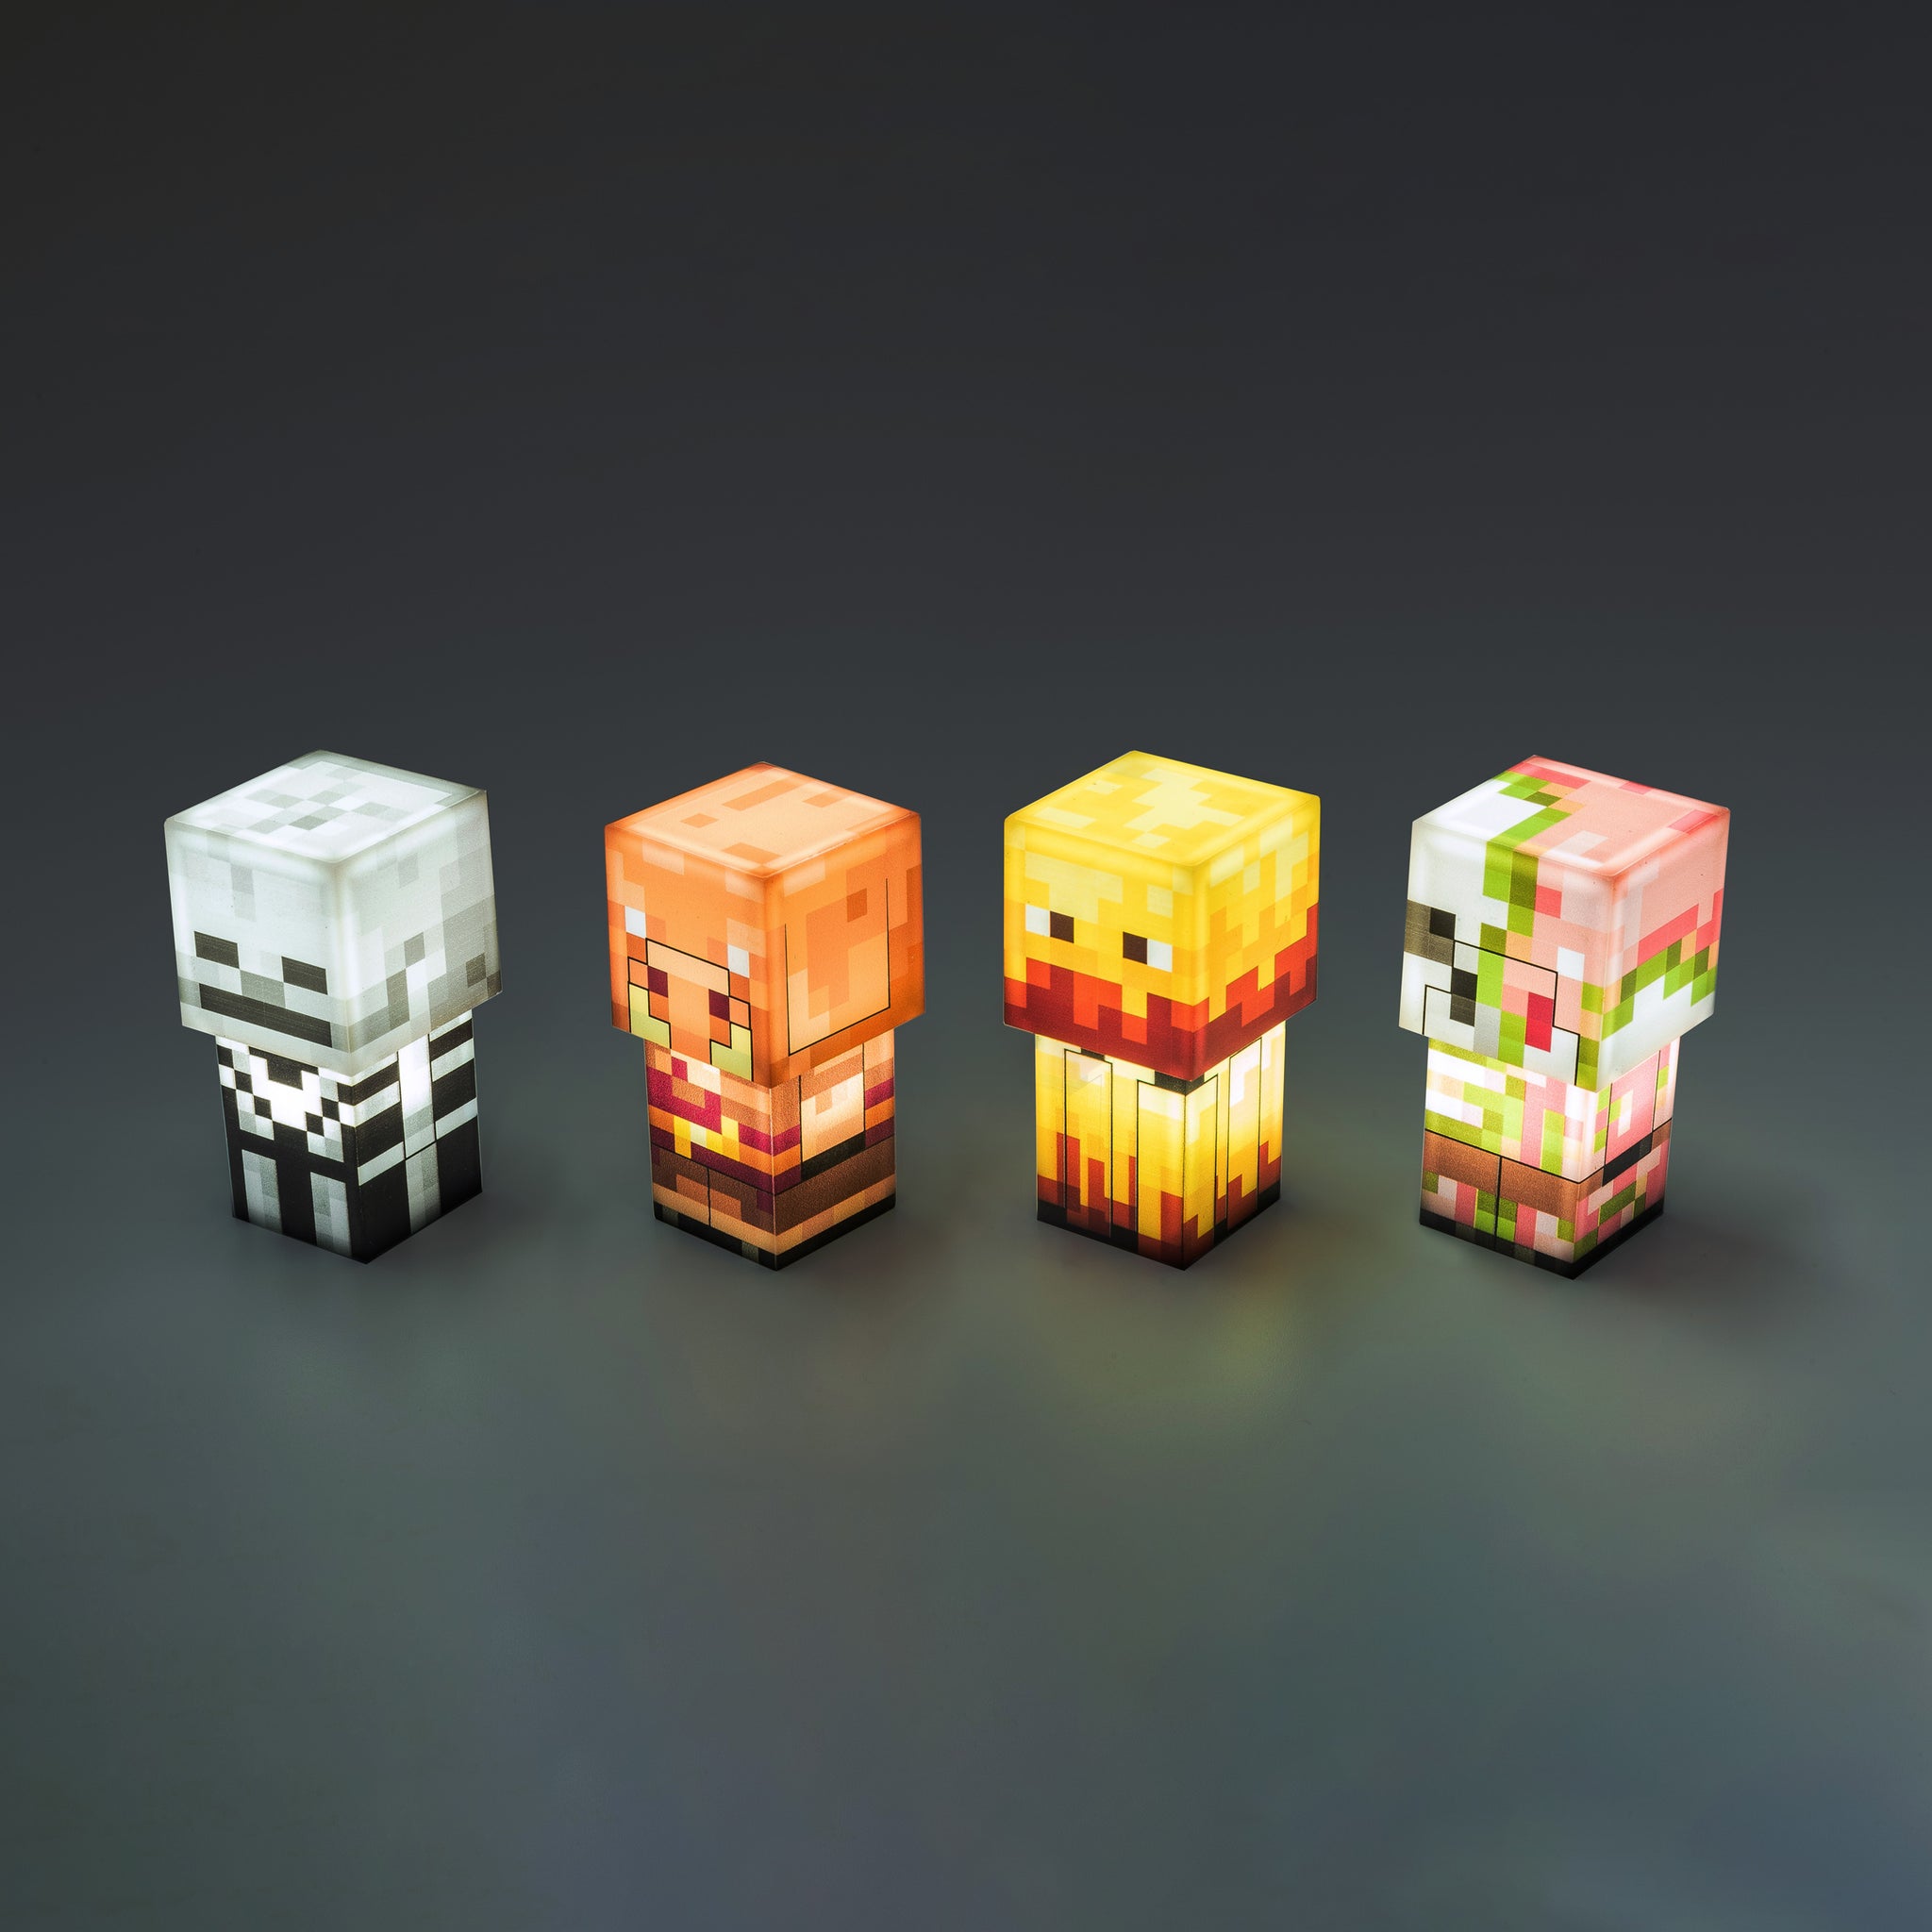 Mini figurines Minecraft